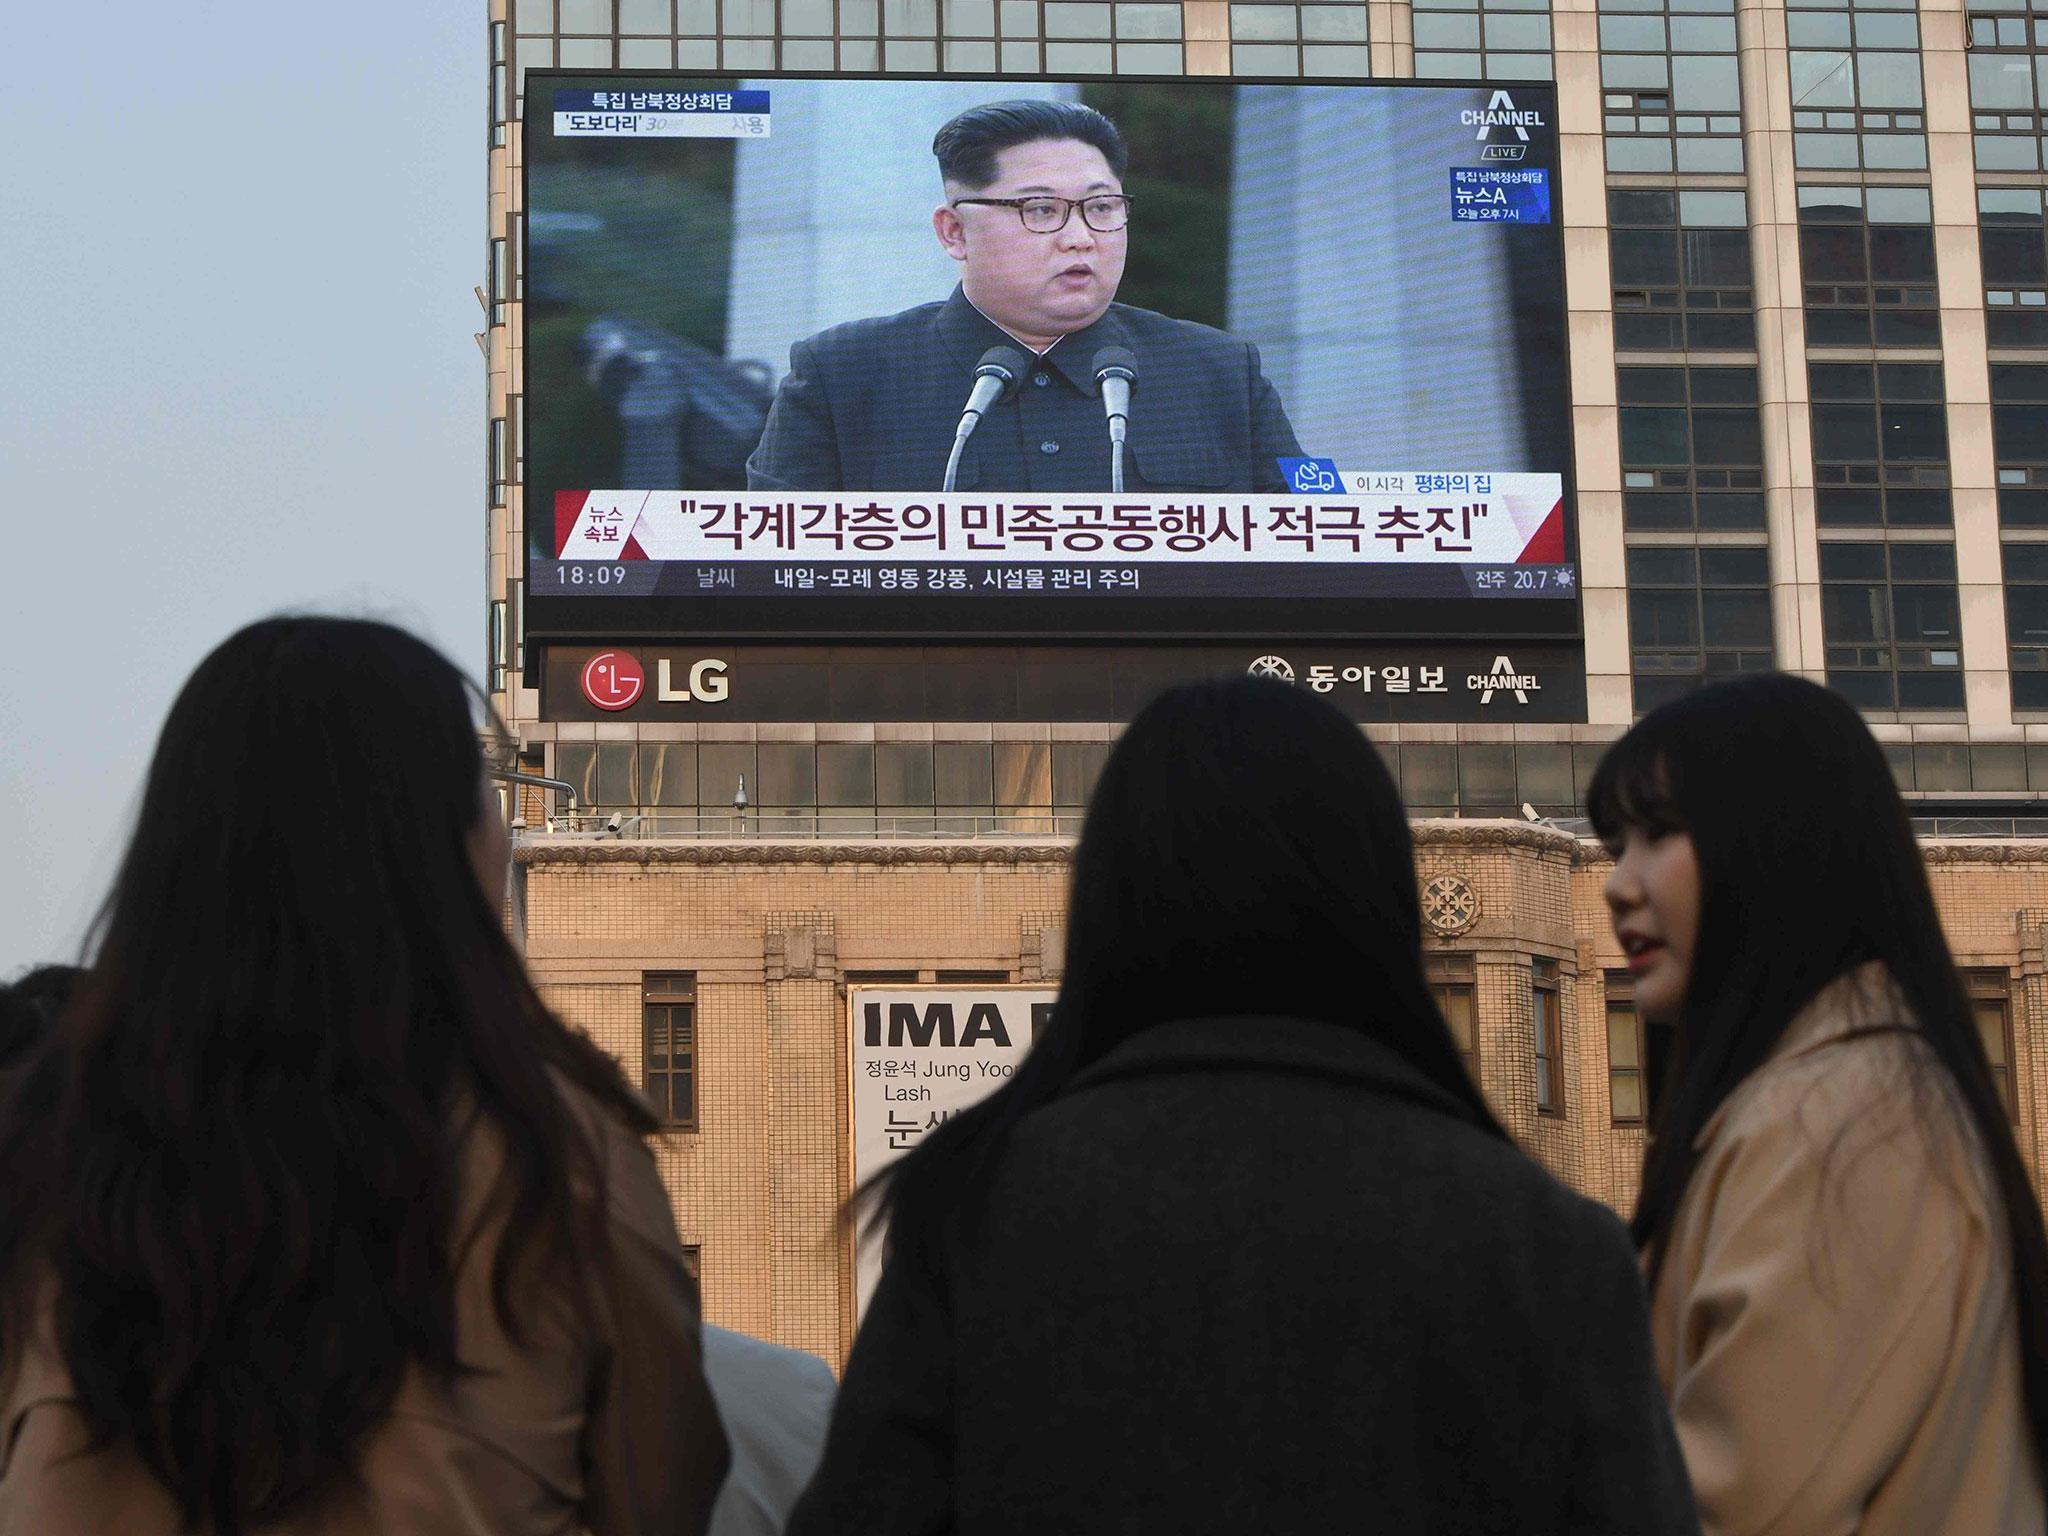 Pedestrians watch the inter-Korean summit on Friday in Seoul